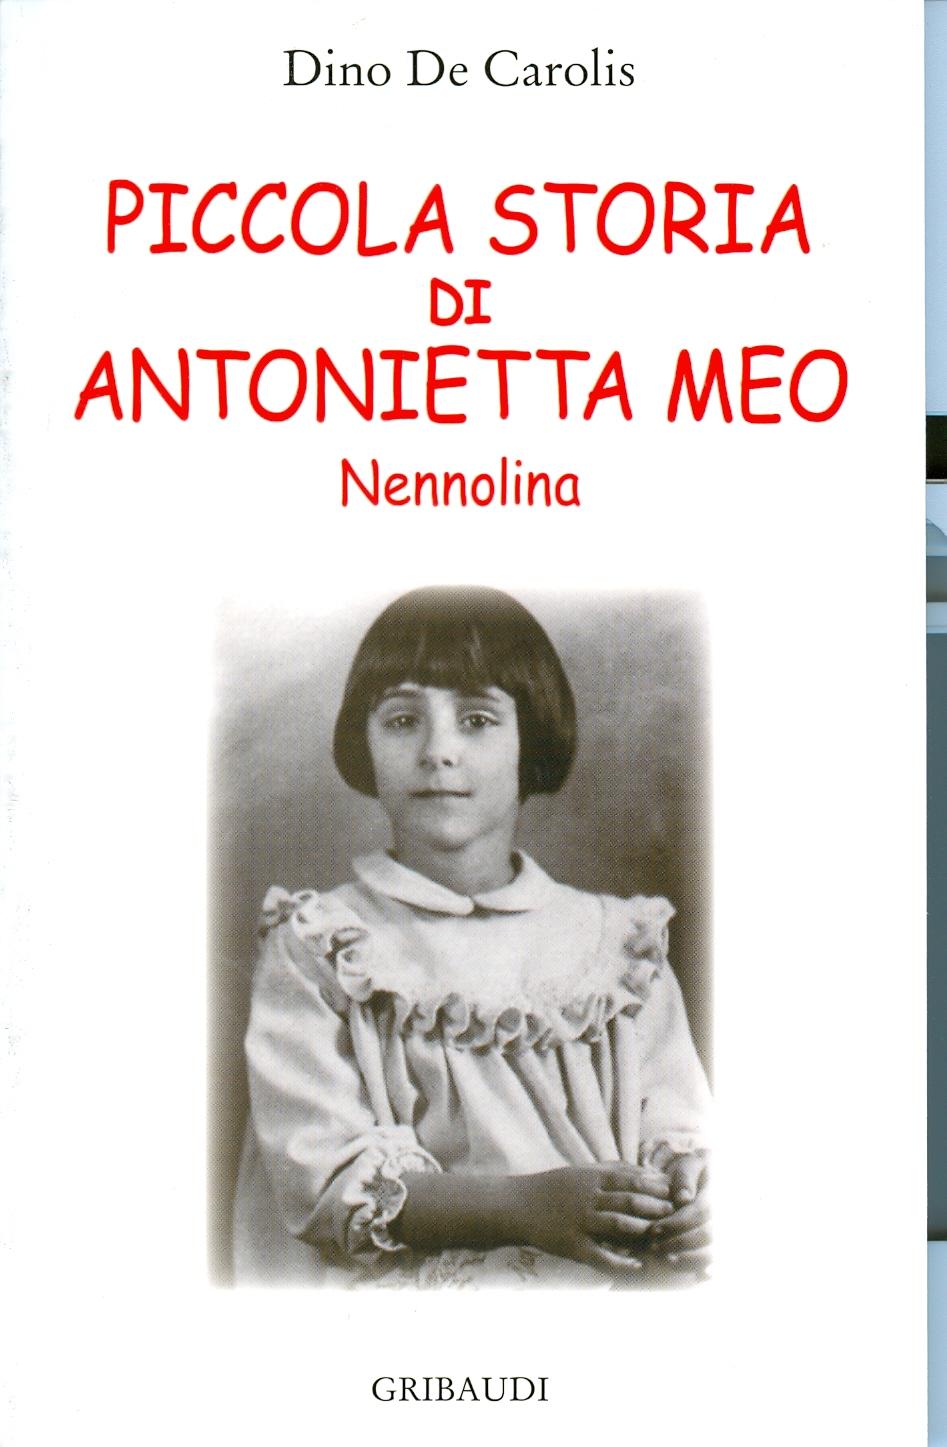 Dino De Carolis - Piccola storia di Antonietta Meo